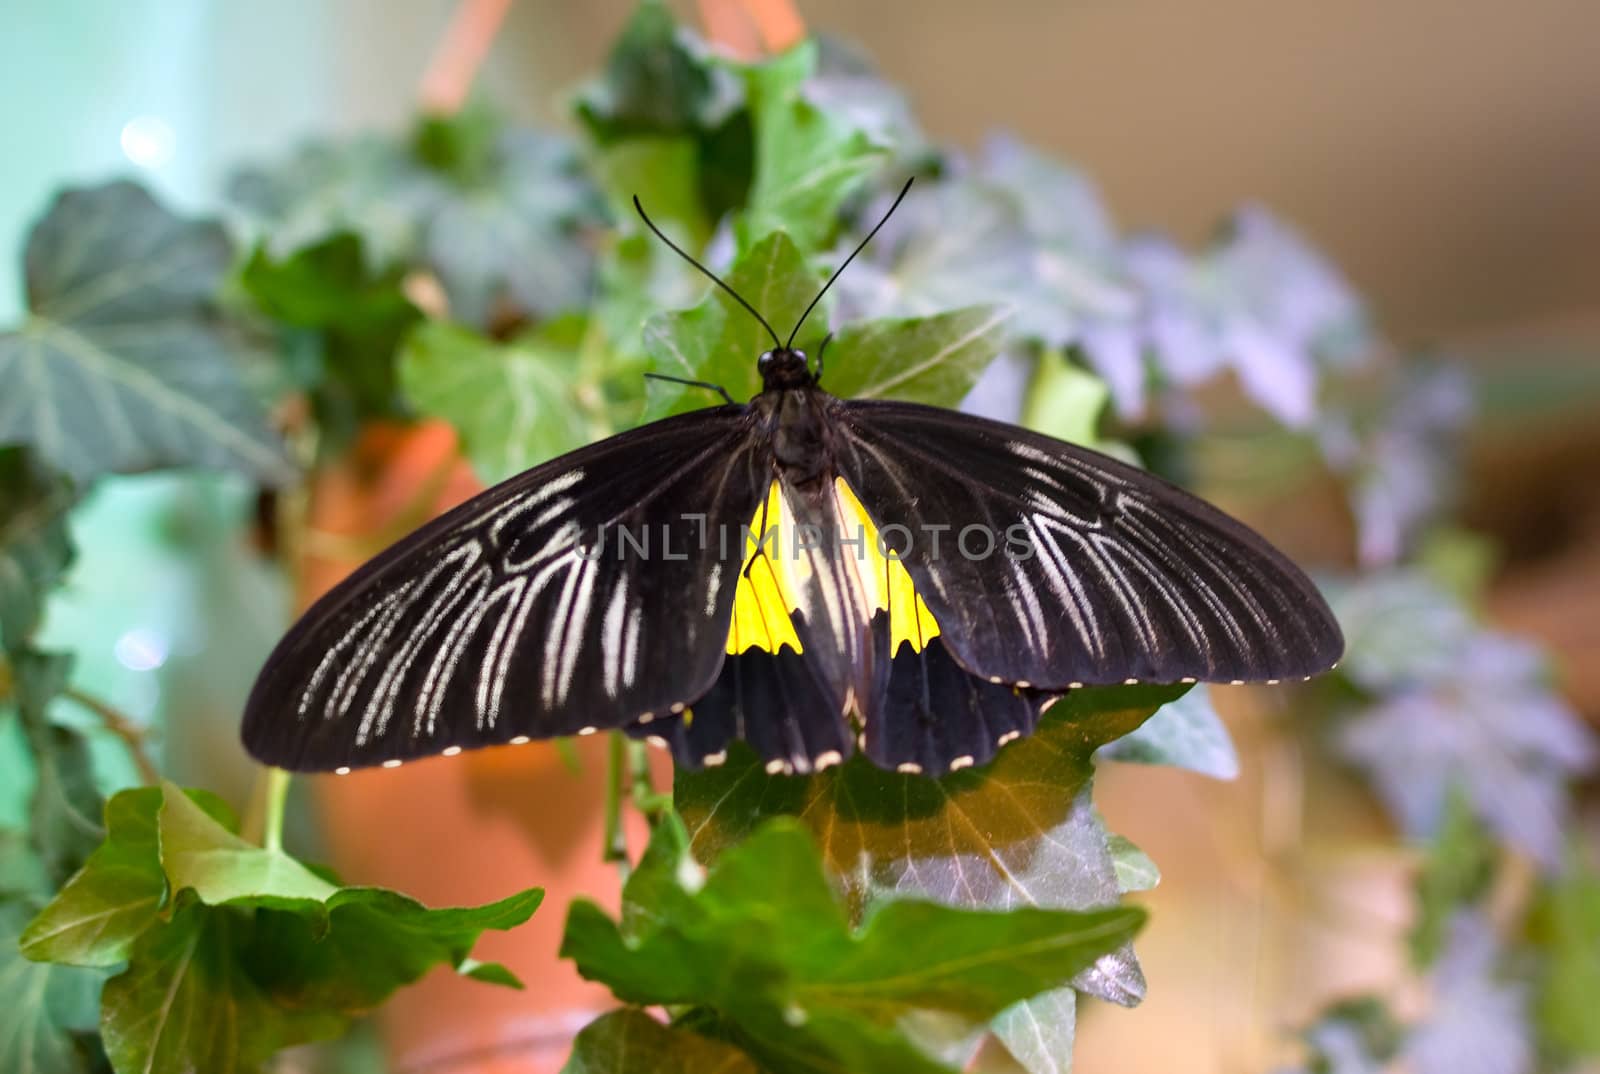 Black Butterfly on green leaf by BIG_TAU